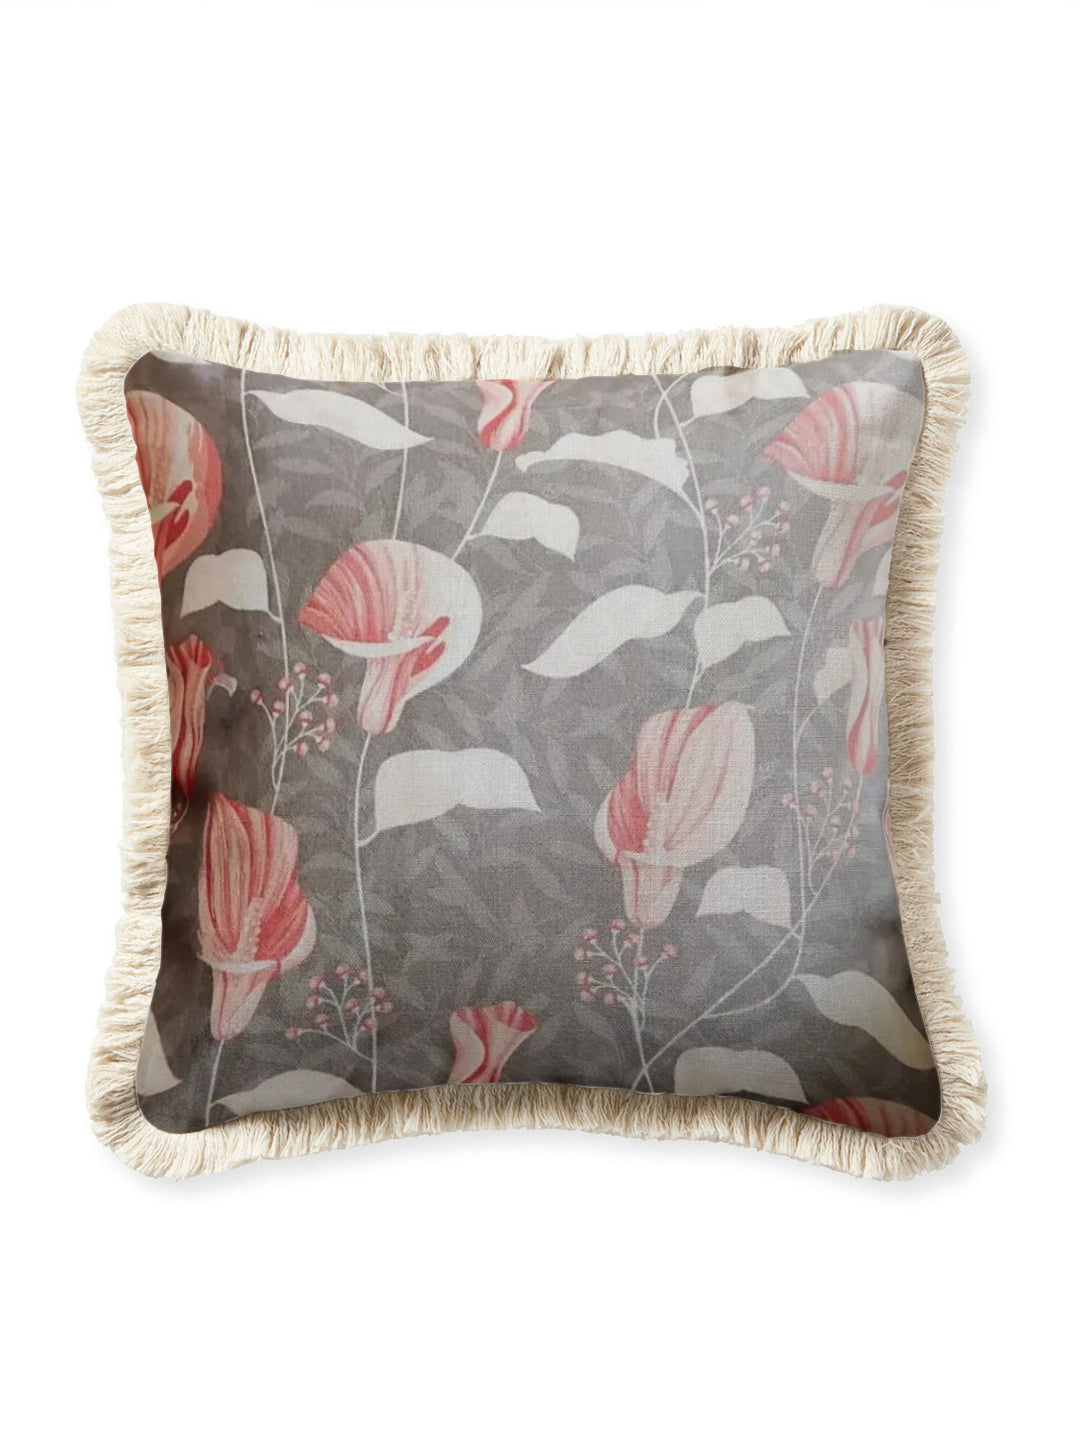 Iris cushion cover